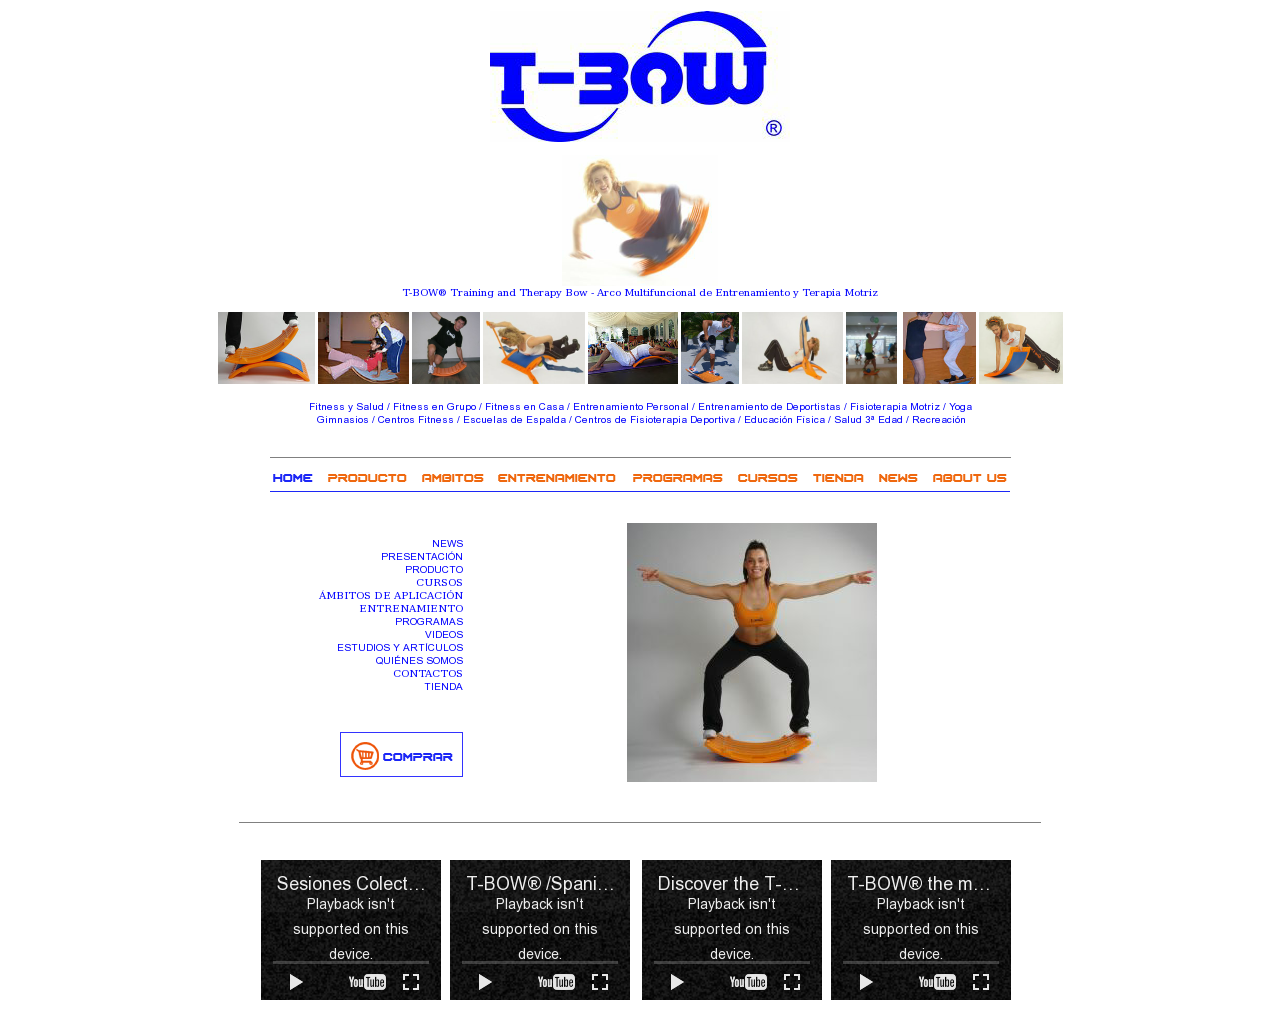 El sitio de la imagen t-bow.es en 1280x1024